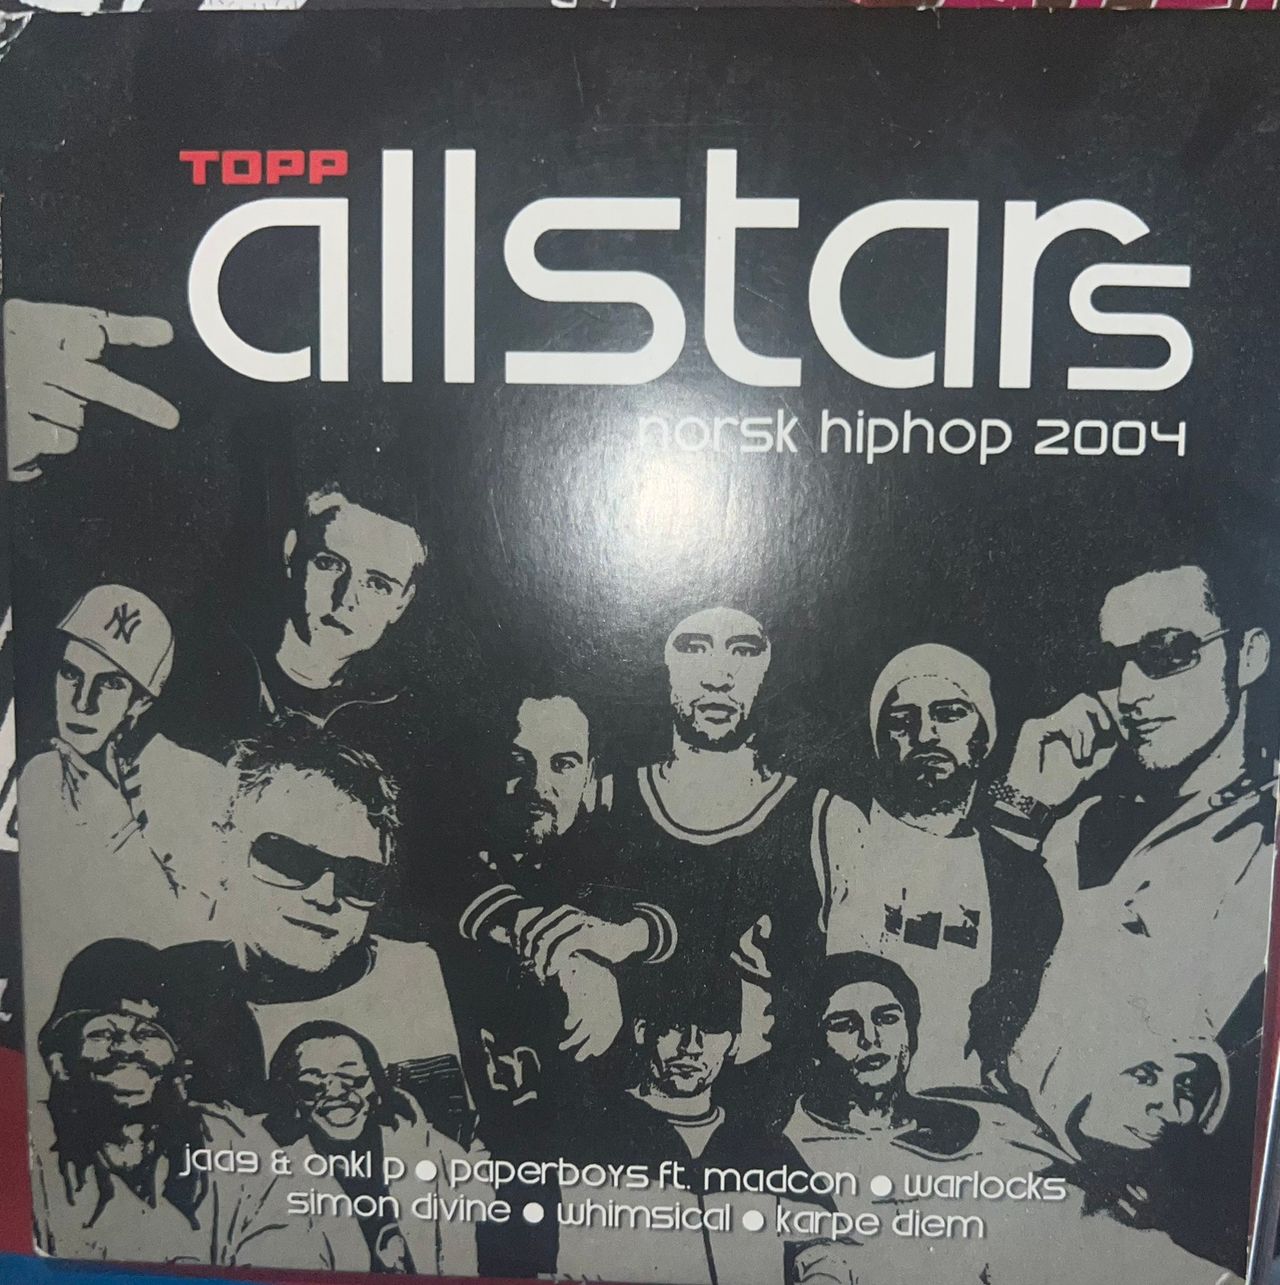 Asser rille Blåt mærke Norsk Hip-hop 2004 - Karpe Diem, Jaa9 & Onklp, Paperboys | FINN torget